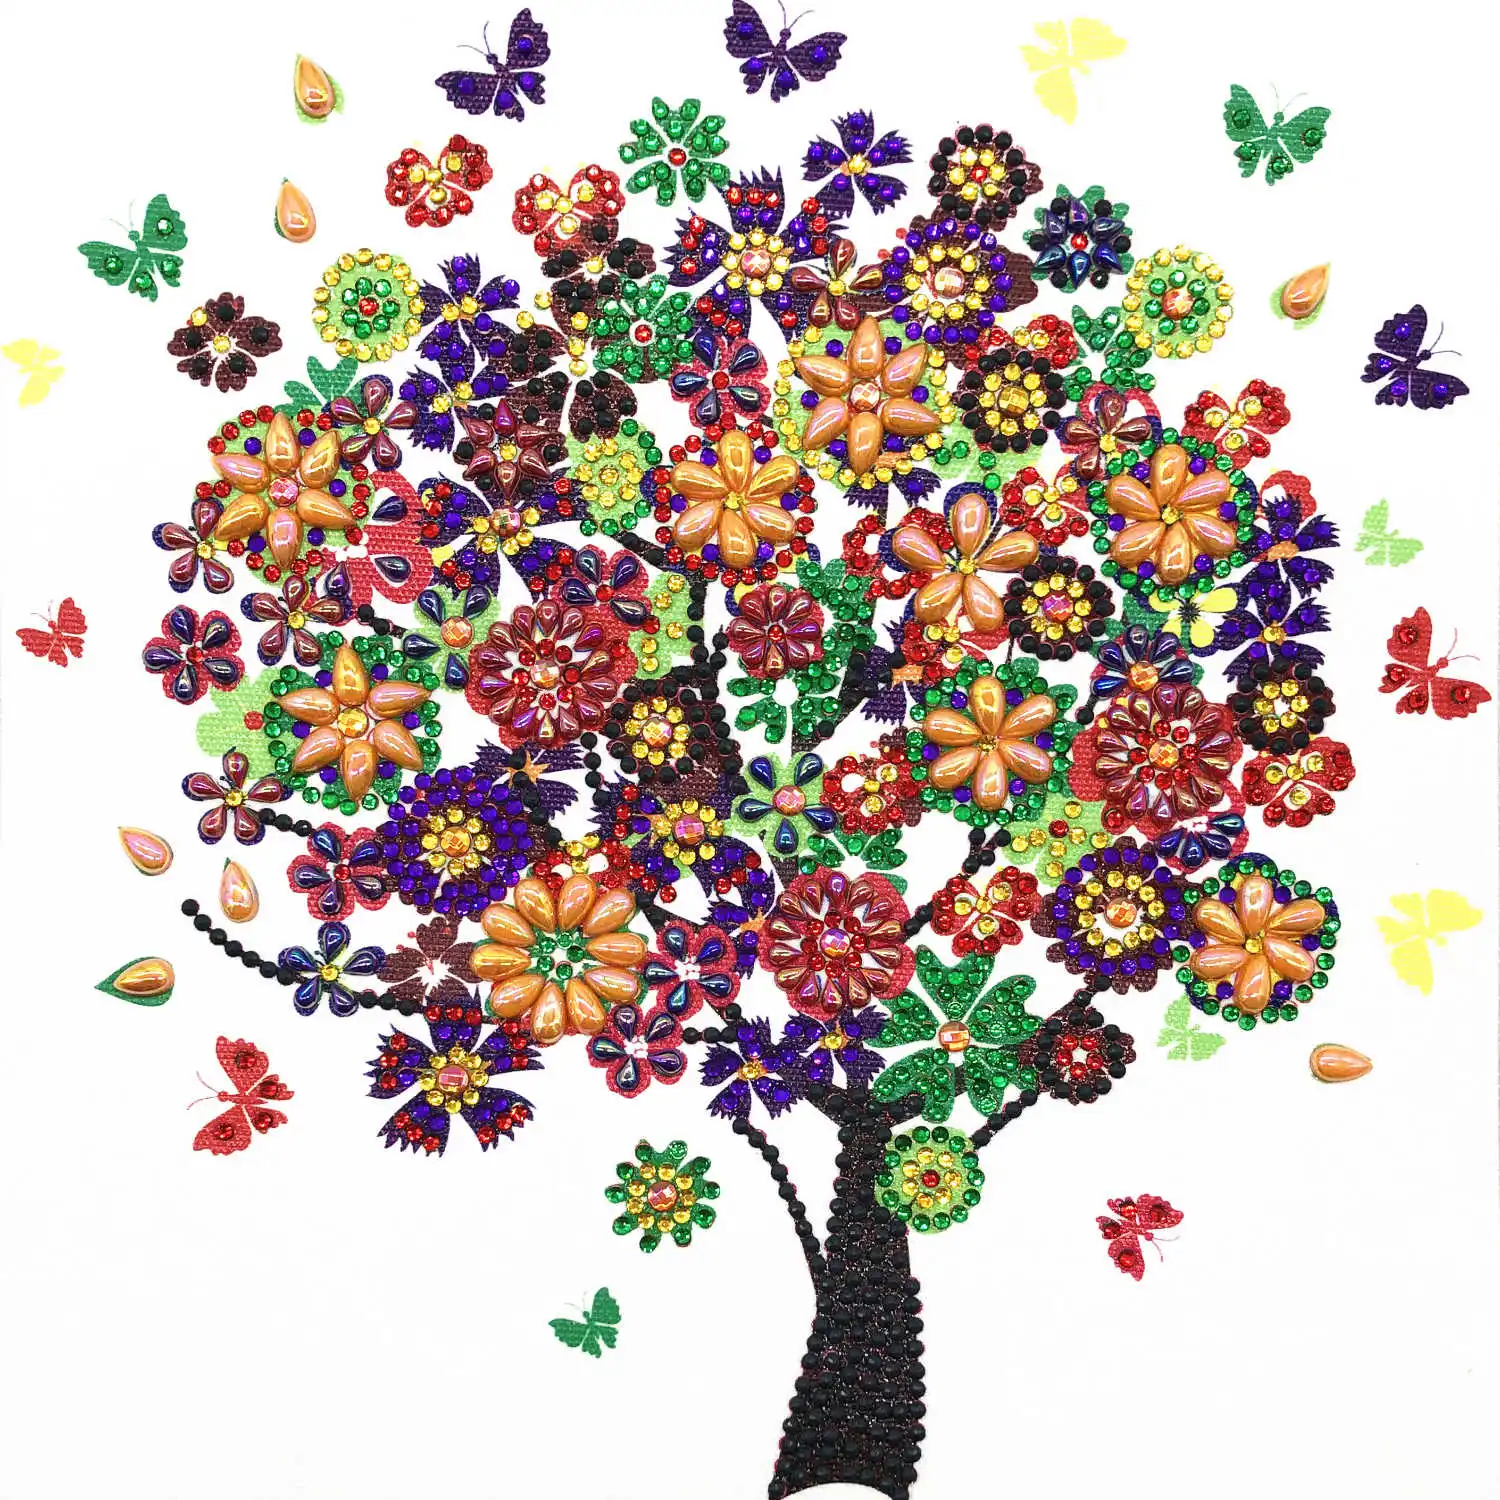 AZQSD алмазная живопись мозаика дерево особой формы ручной работы подарок картина стразы цветок дрель домашний декор 24x24 см - Цвет: R8250